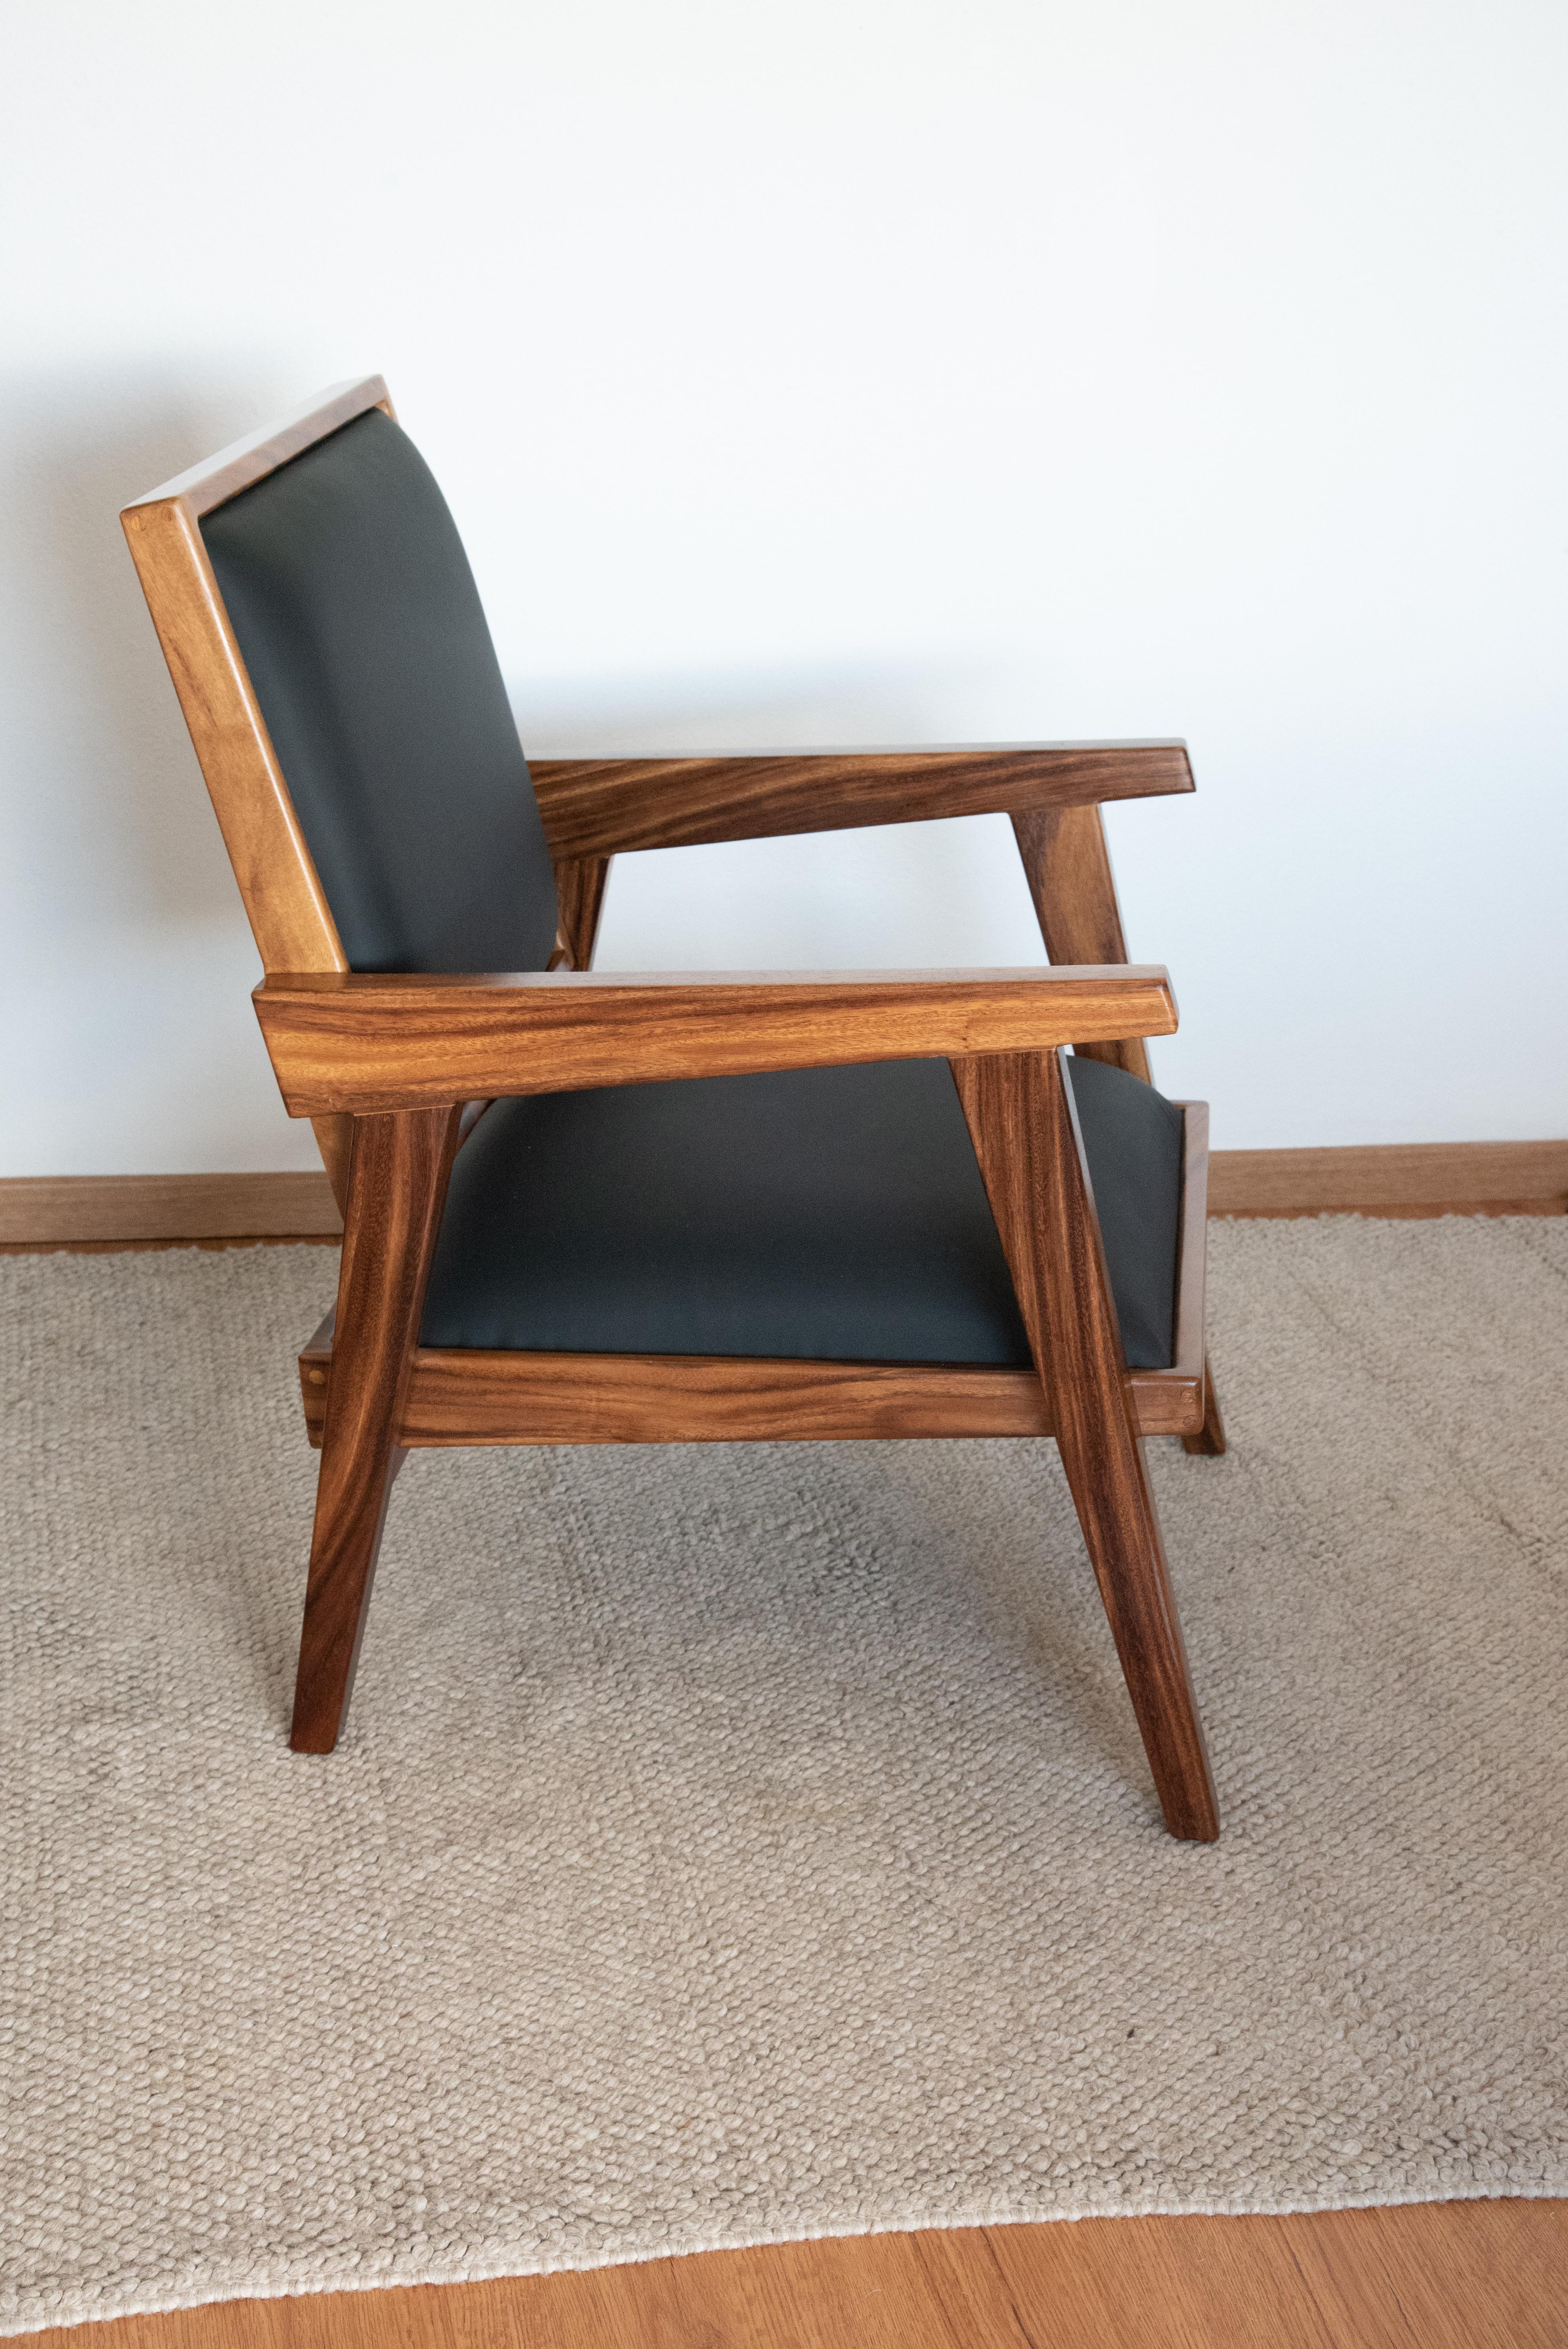 modern rustic chair